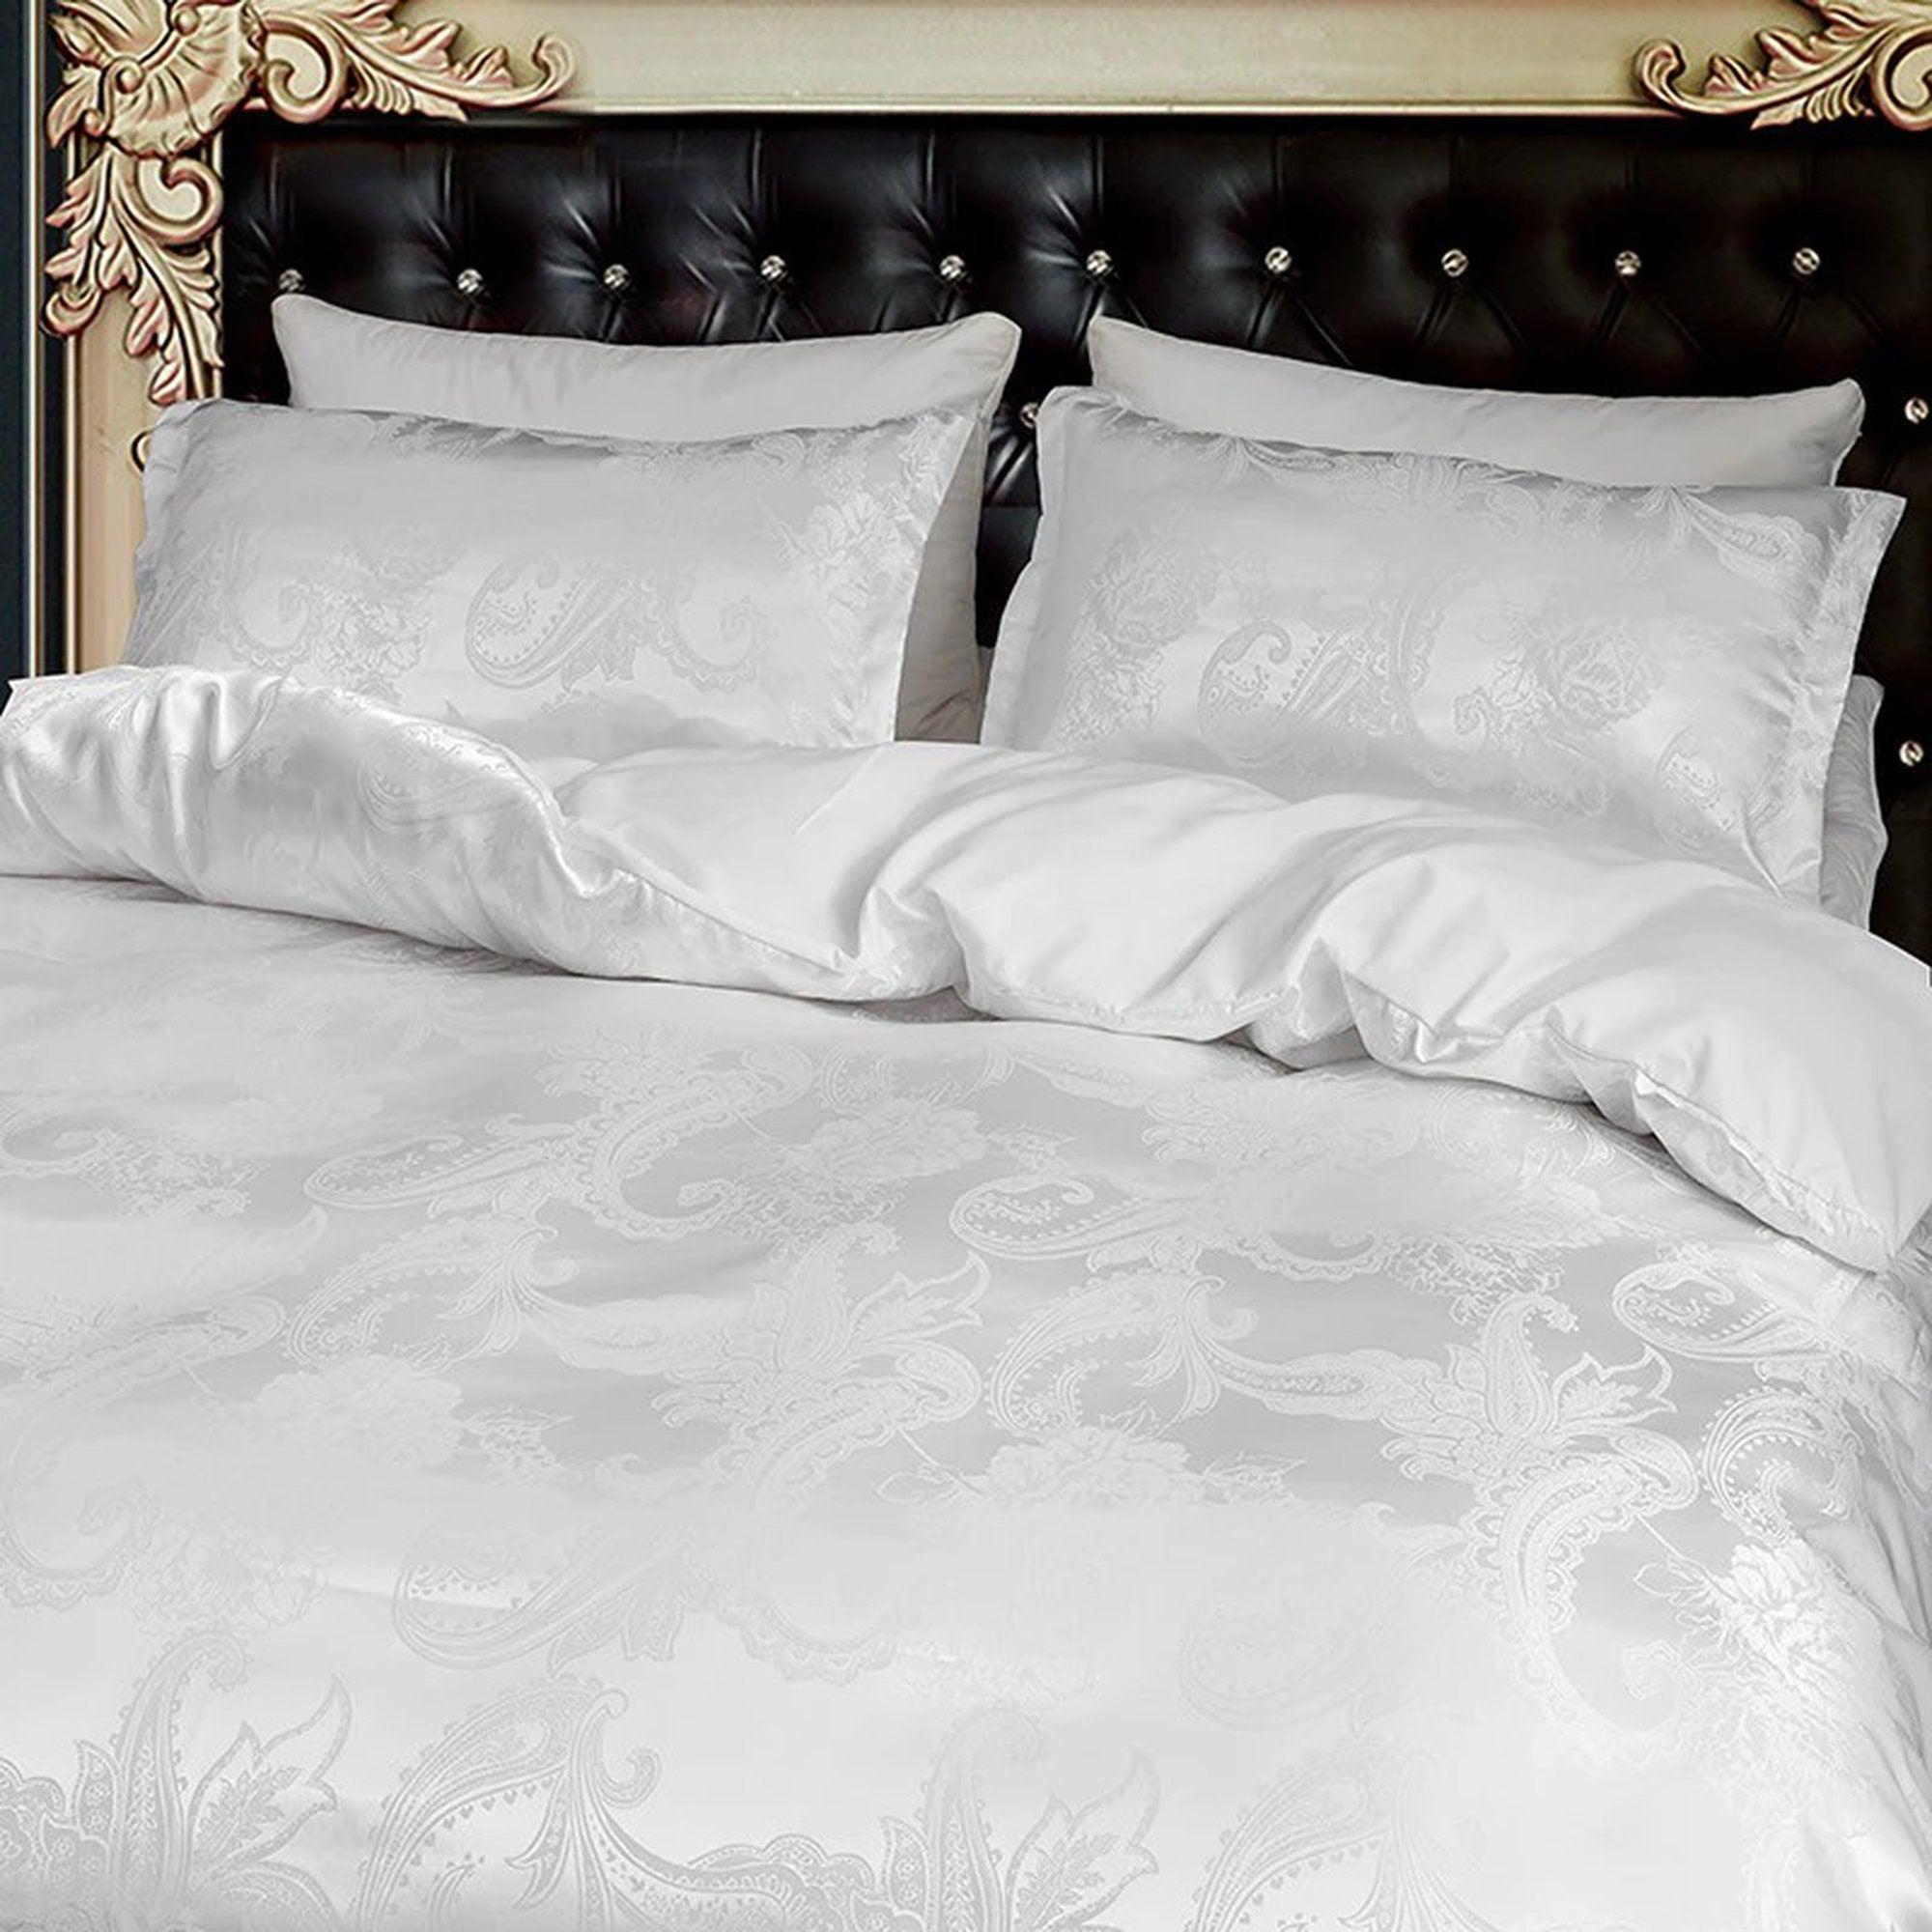 daintyduvet Luxury Damask Bedding made with Silky Jacquard Fabric, White Duvet Cover Set, Designer Bedding, Aesthetic Duvet King Queen Full Twin